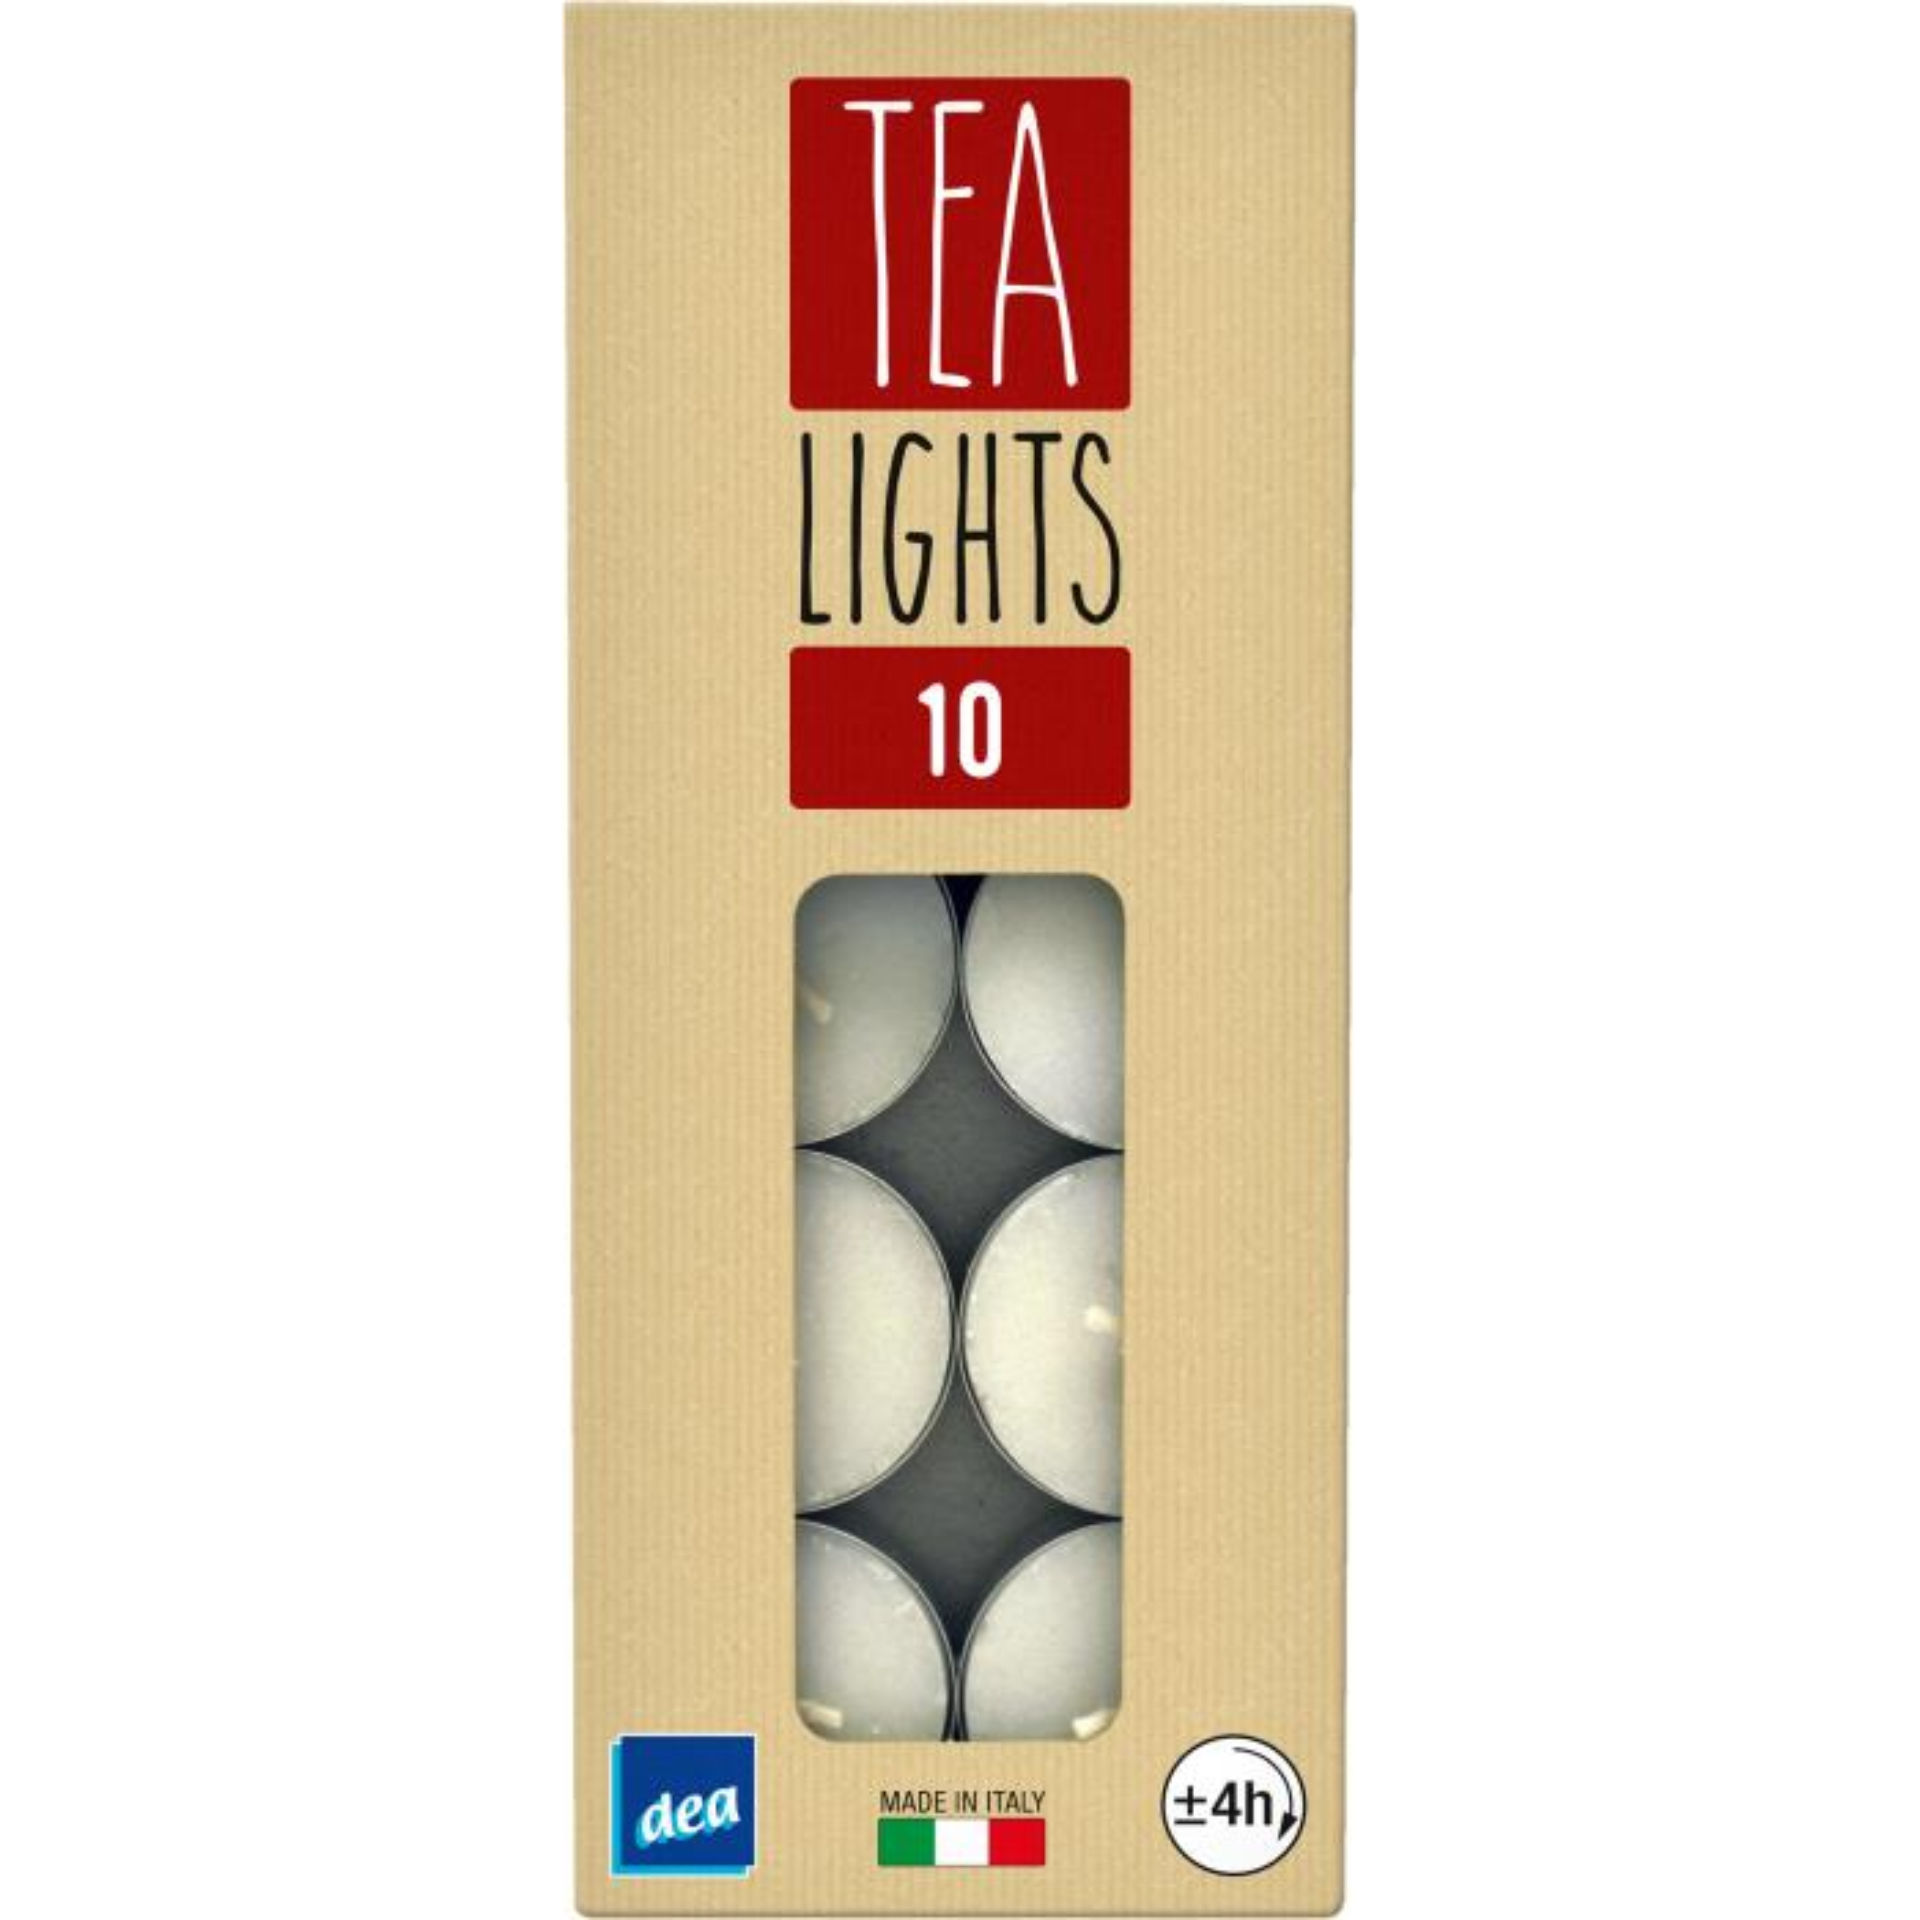 DEA TEA LIGHTS 10PZDea